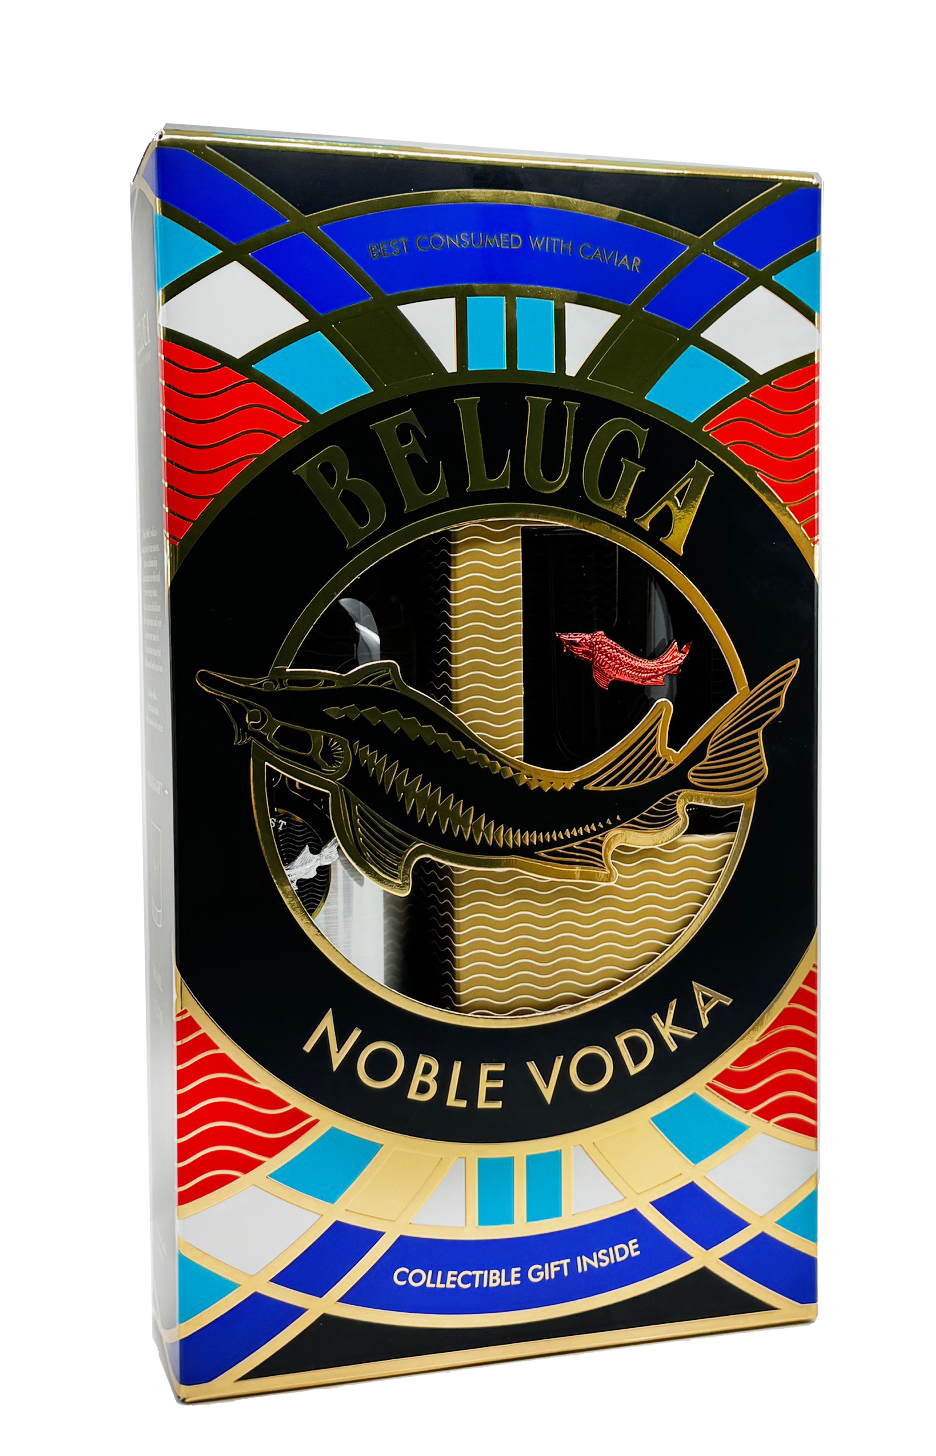 Beluga Noble Vodka - GESCHENKPAKET - mit Glas 0,7l 40%vol.